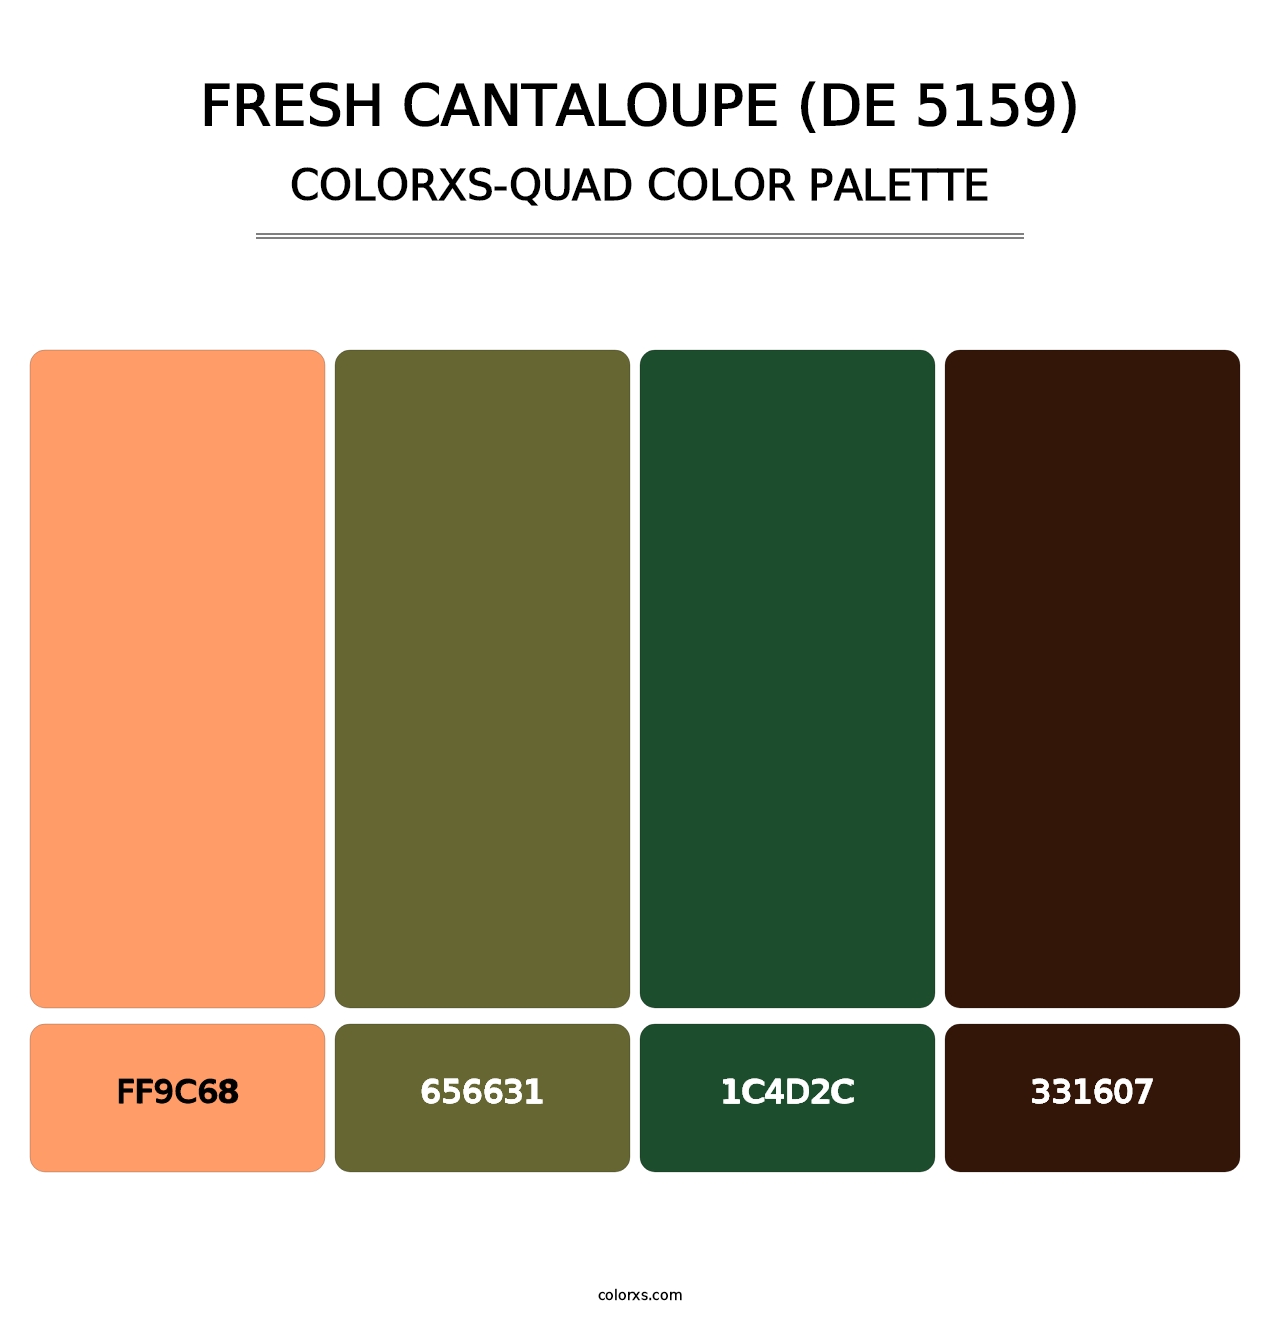 Fresh Cantaloupe (DE 5159) - Colorxs Quad Palette